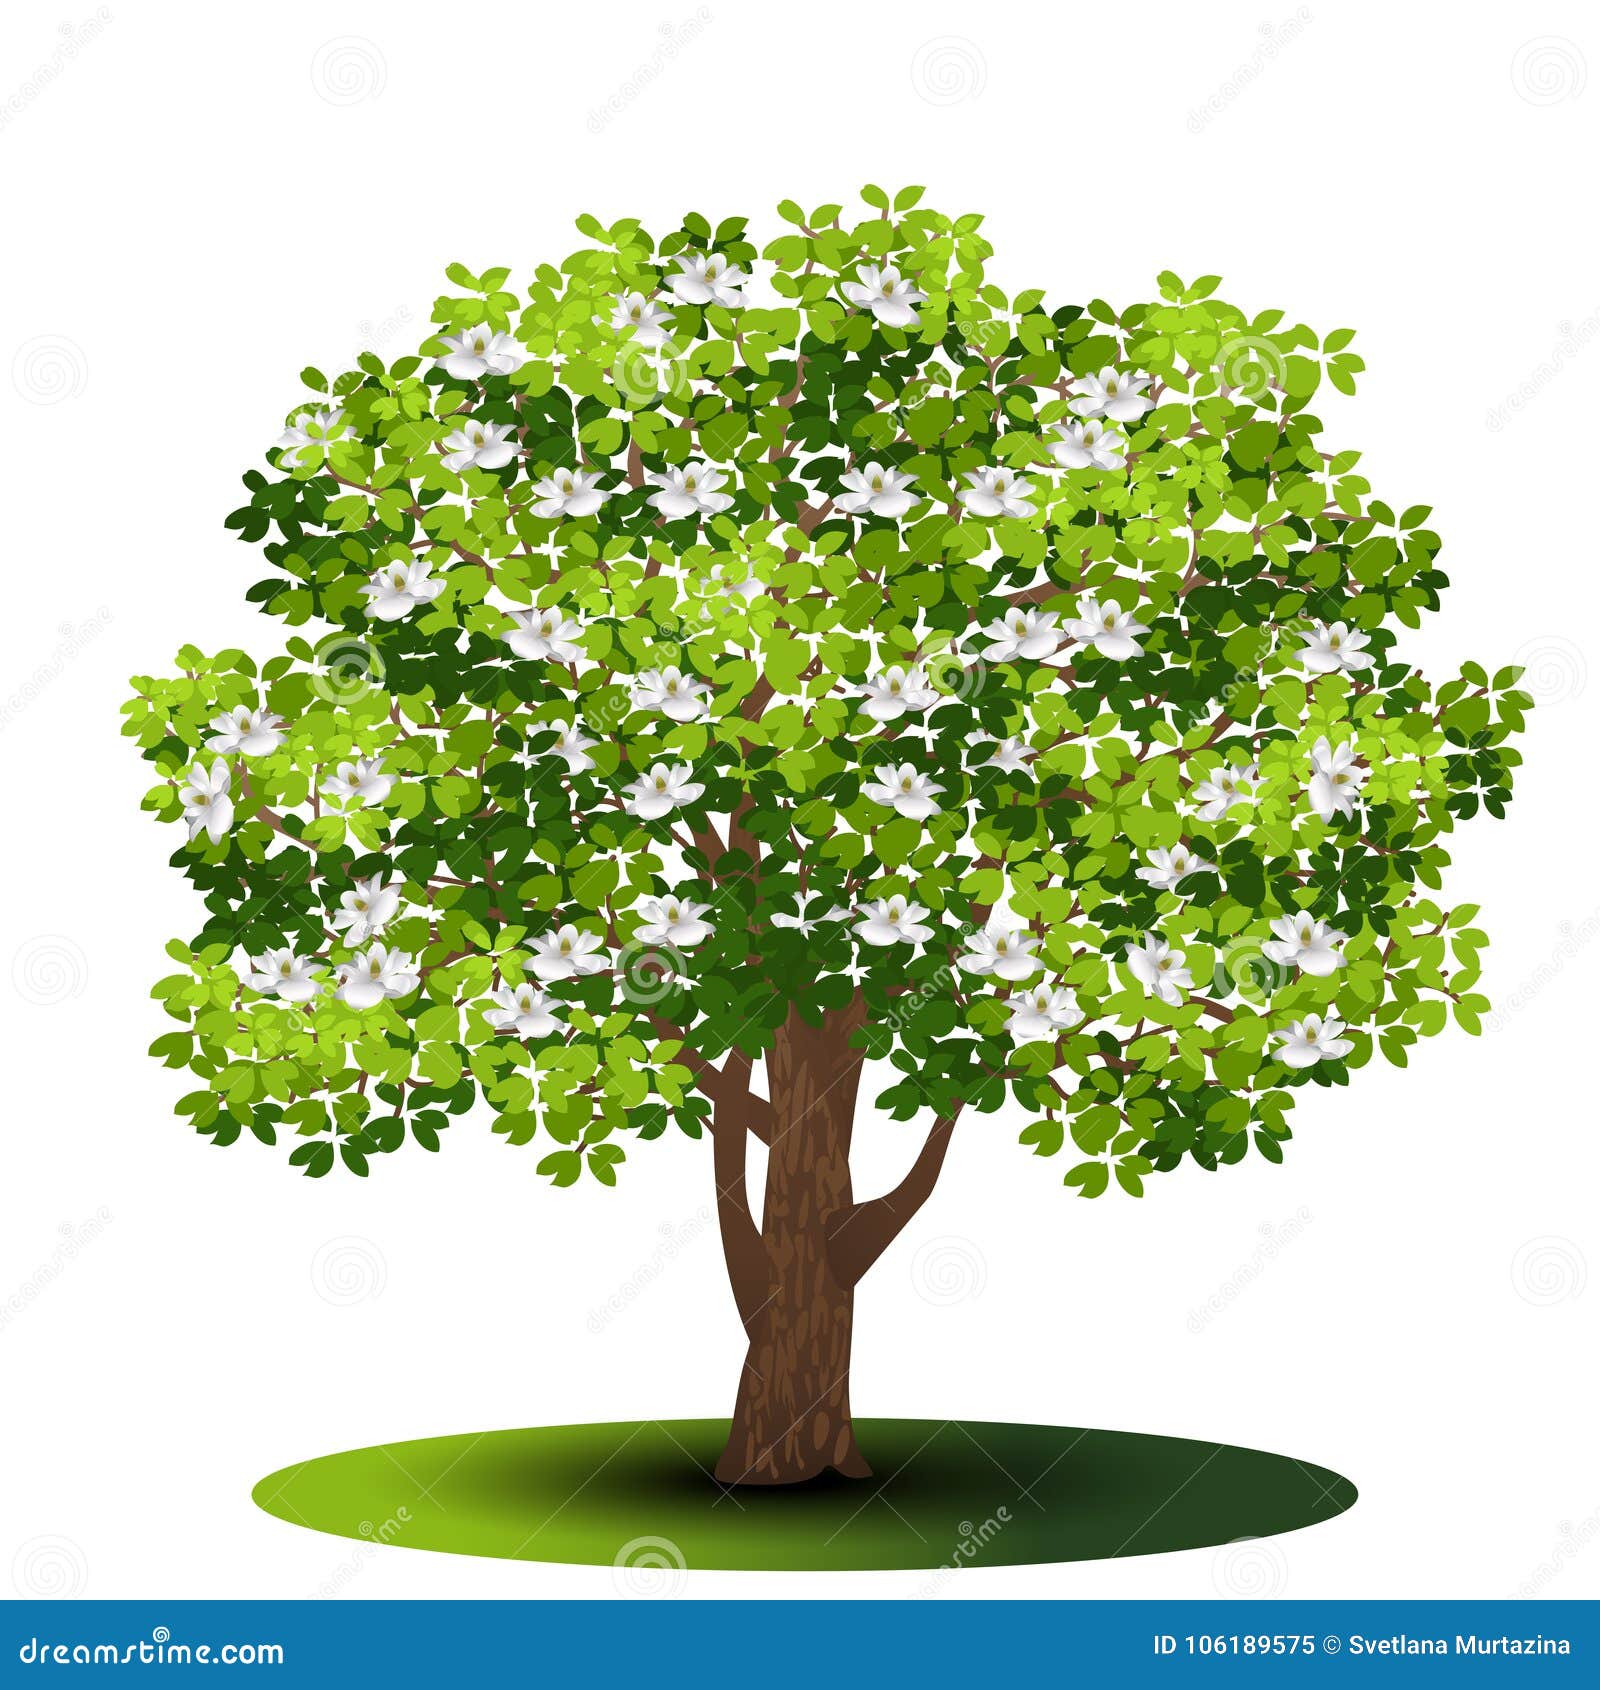 与绿色叶子和花的分隔的树木兰向量例证 插画包括有要素 白杨树 增长 没人 树干 生活